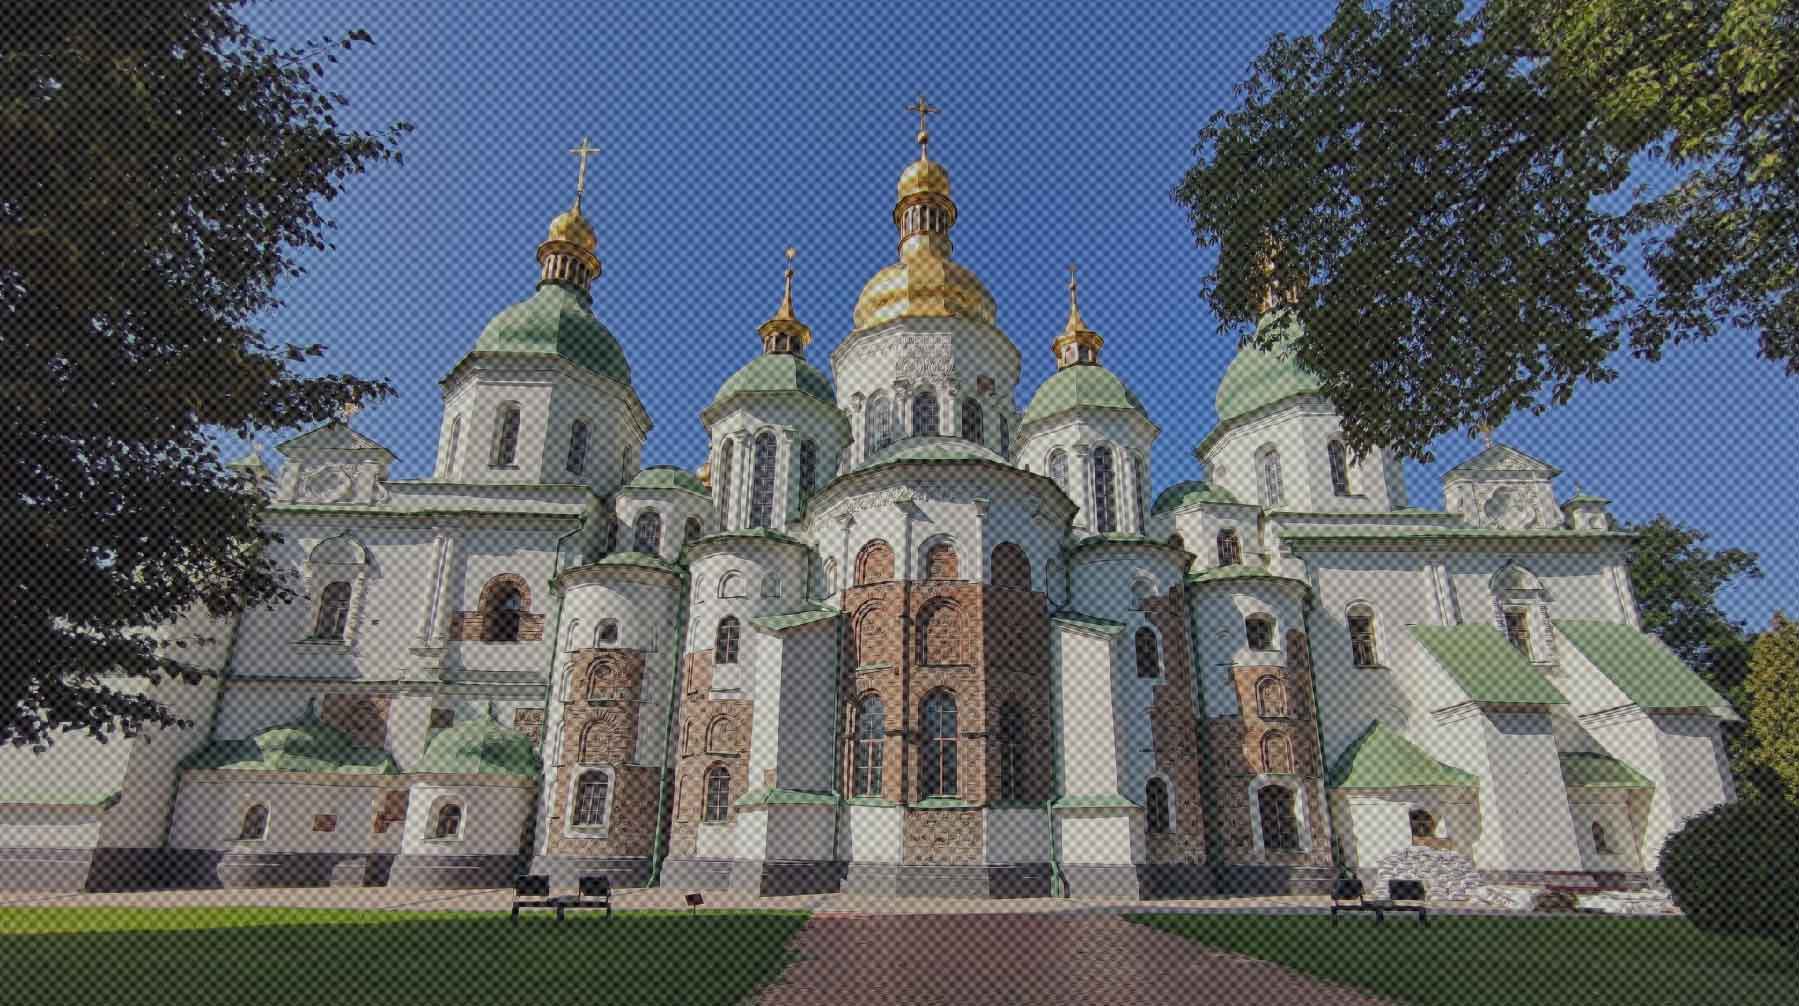 Dailystorm - «Идет борьба духовного порядка»: богослов Осипов предрек гонения на верующих после запрета УПЦ на Украине